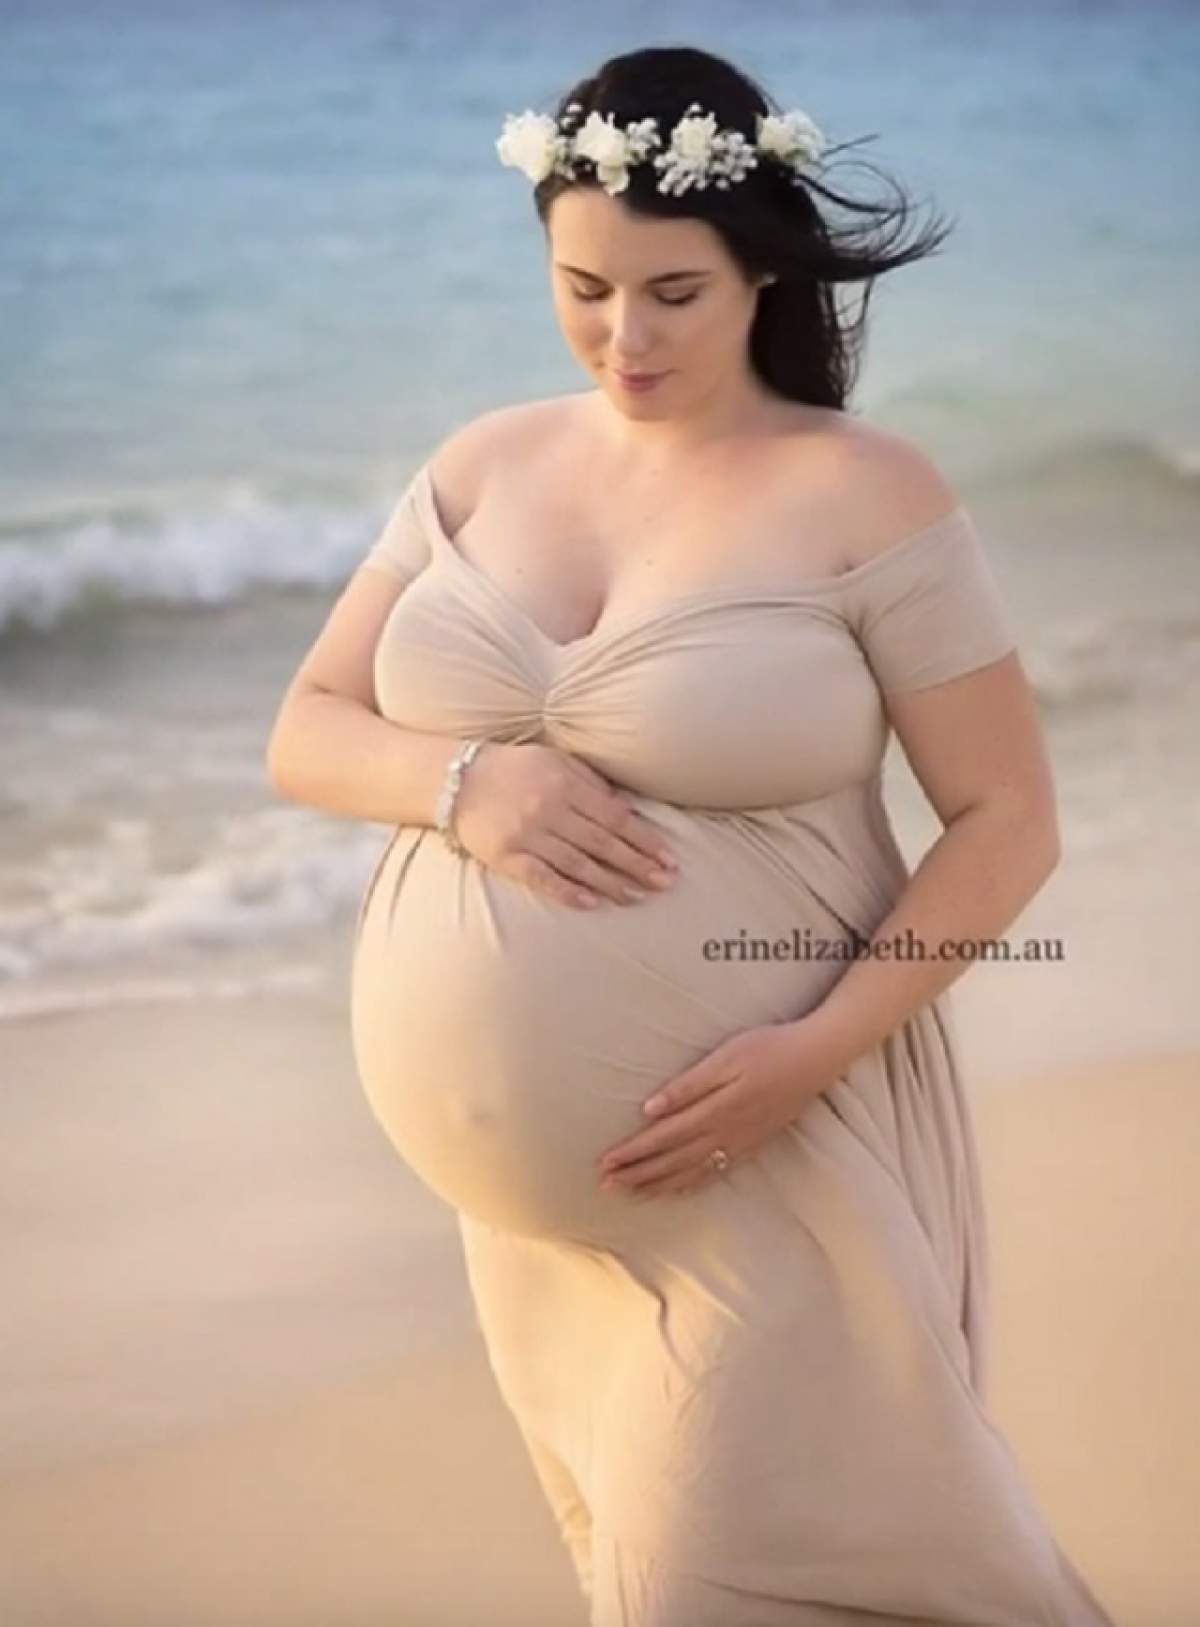 Un nou record doborât de femeia gravidă cu cvintupleţi! A născut cinci copii, în doar două minute